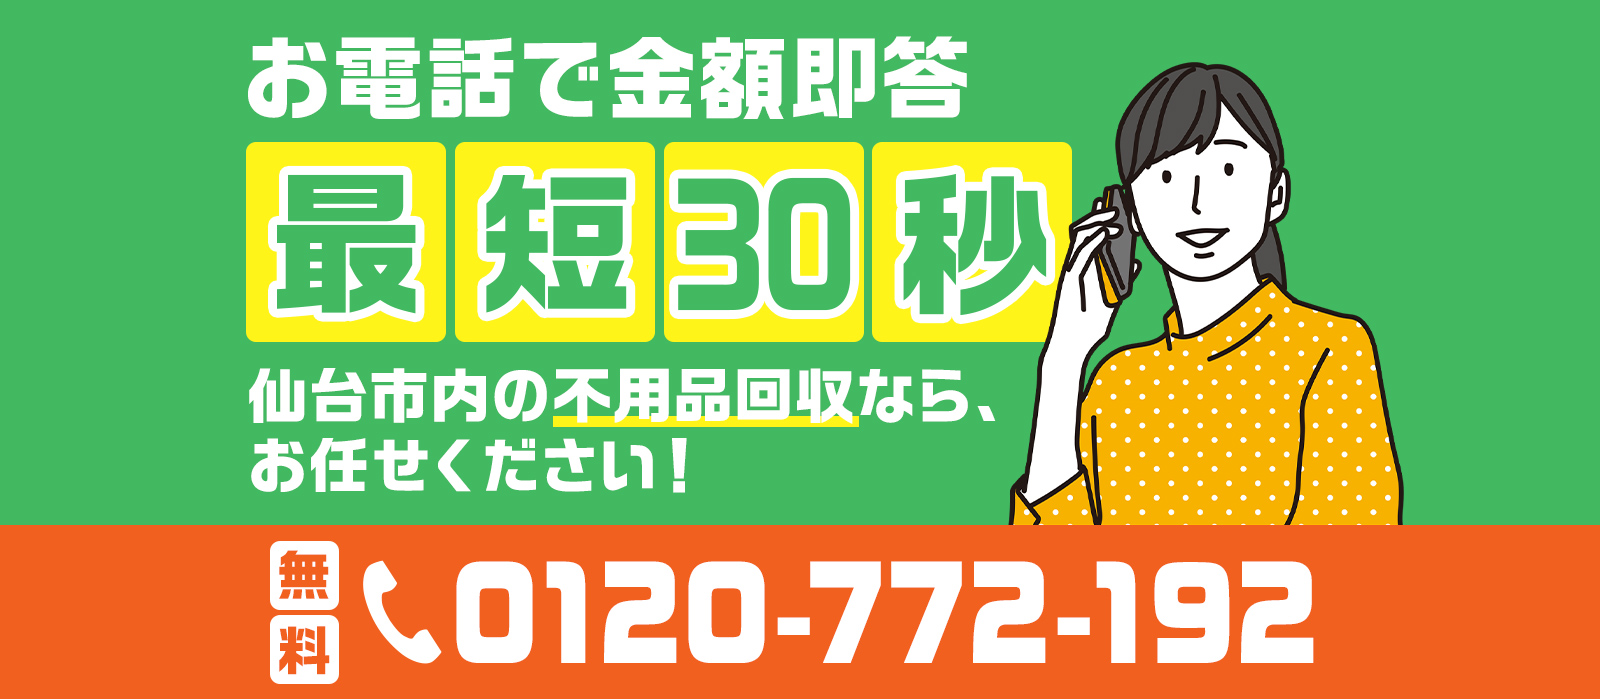 お電話で金額即答！最短30秒。仙台市内の不用品回収なら、お任せください！お電話無料です。0120-722-192